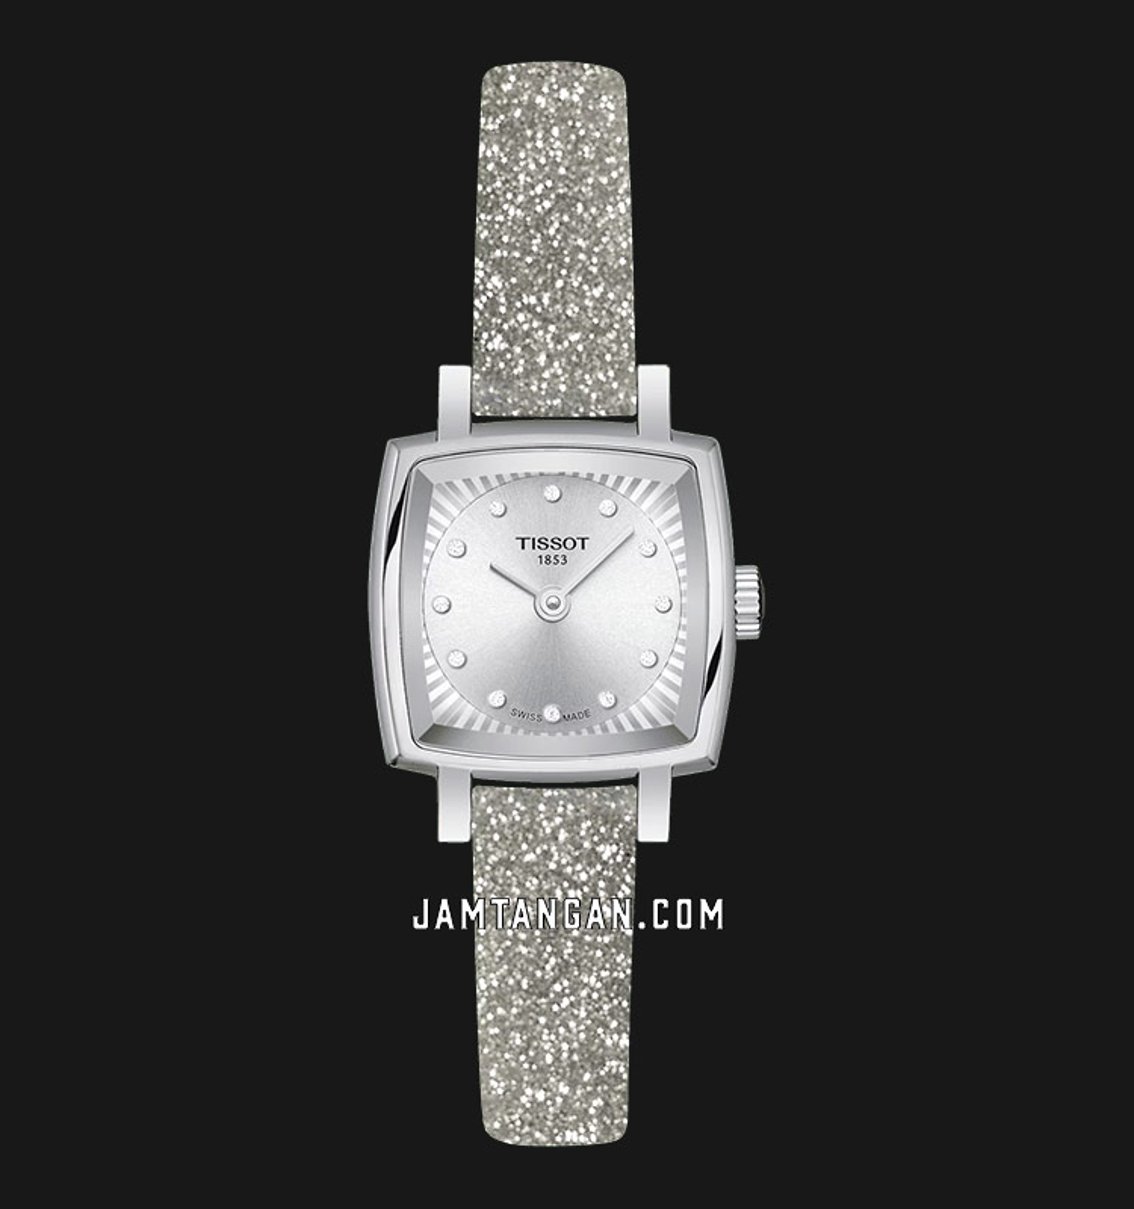 Salah satu jam tangan wanita Swiss Made dengan harga terjangkau.